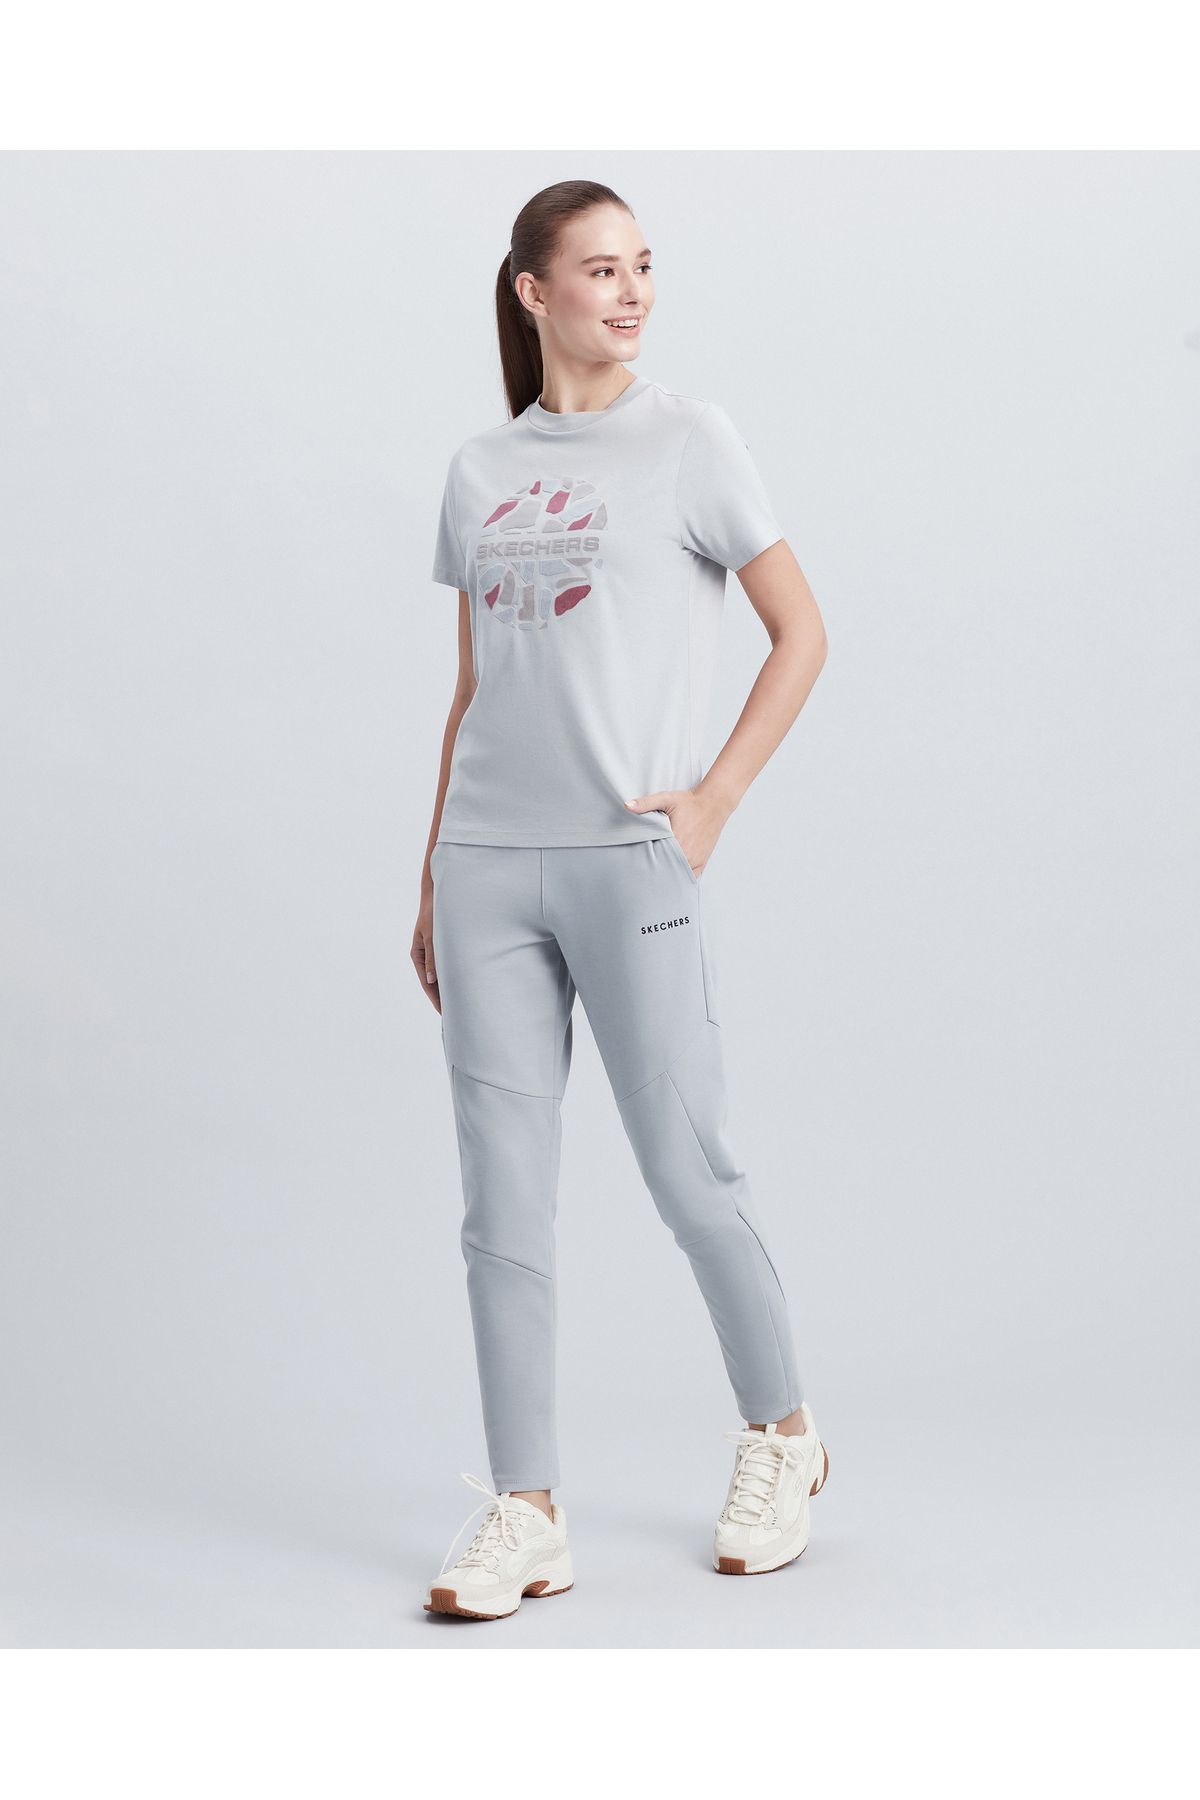 Skechers W Velvet Print T-shirt Kadın Mavi Tshirt S212944-407